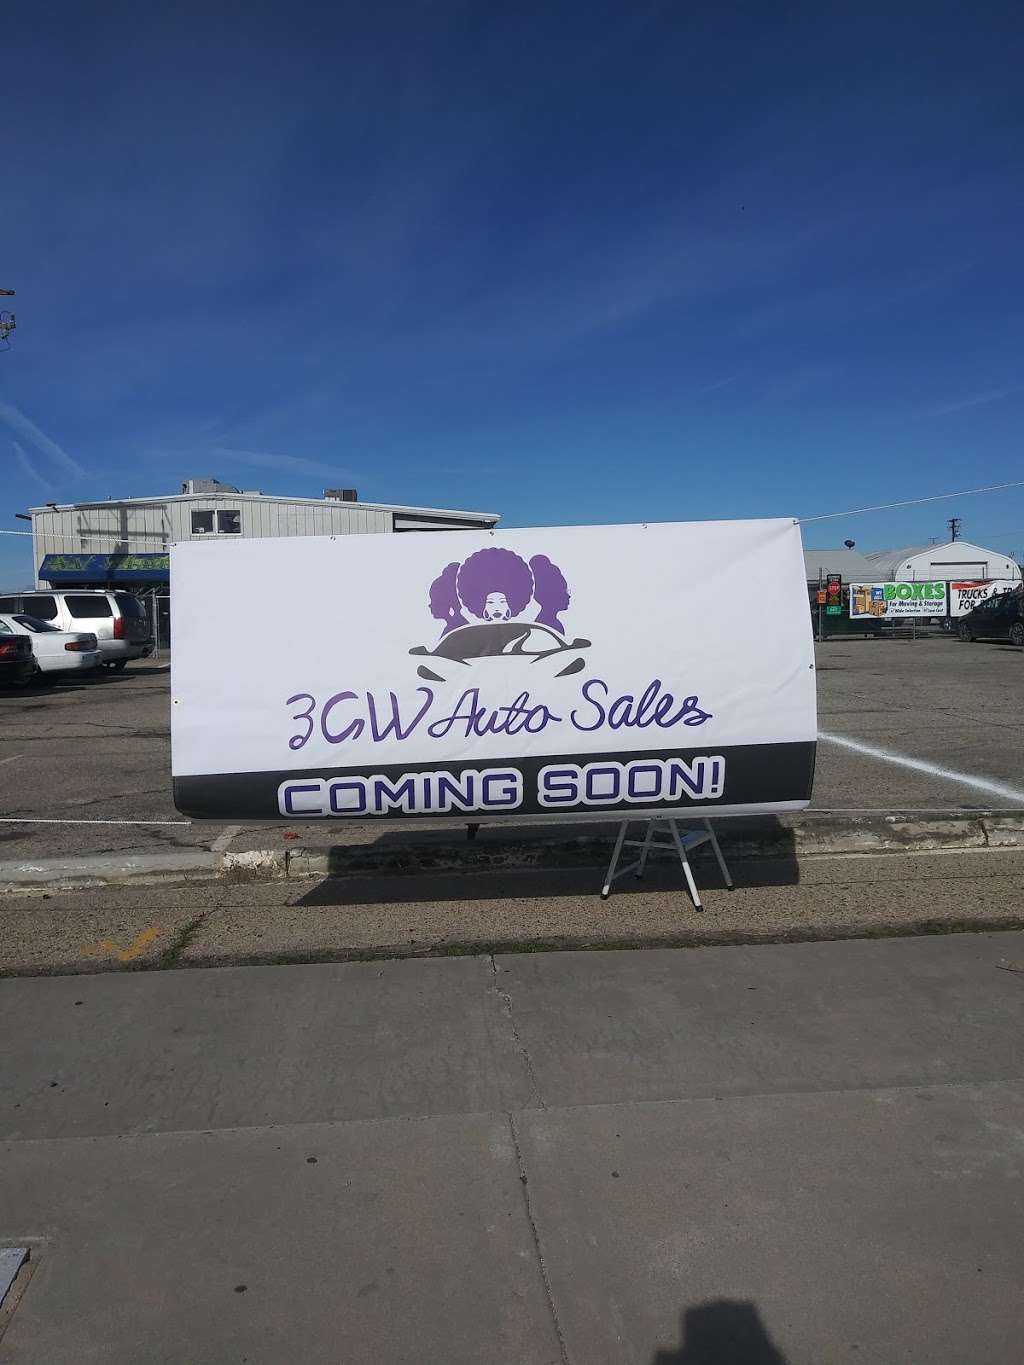 3GW Auto-Sales | 207 W Ave I suite B, Lancaster, CA 93534 | Phone: (661) 494-2019